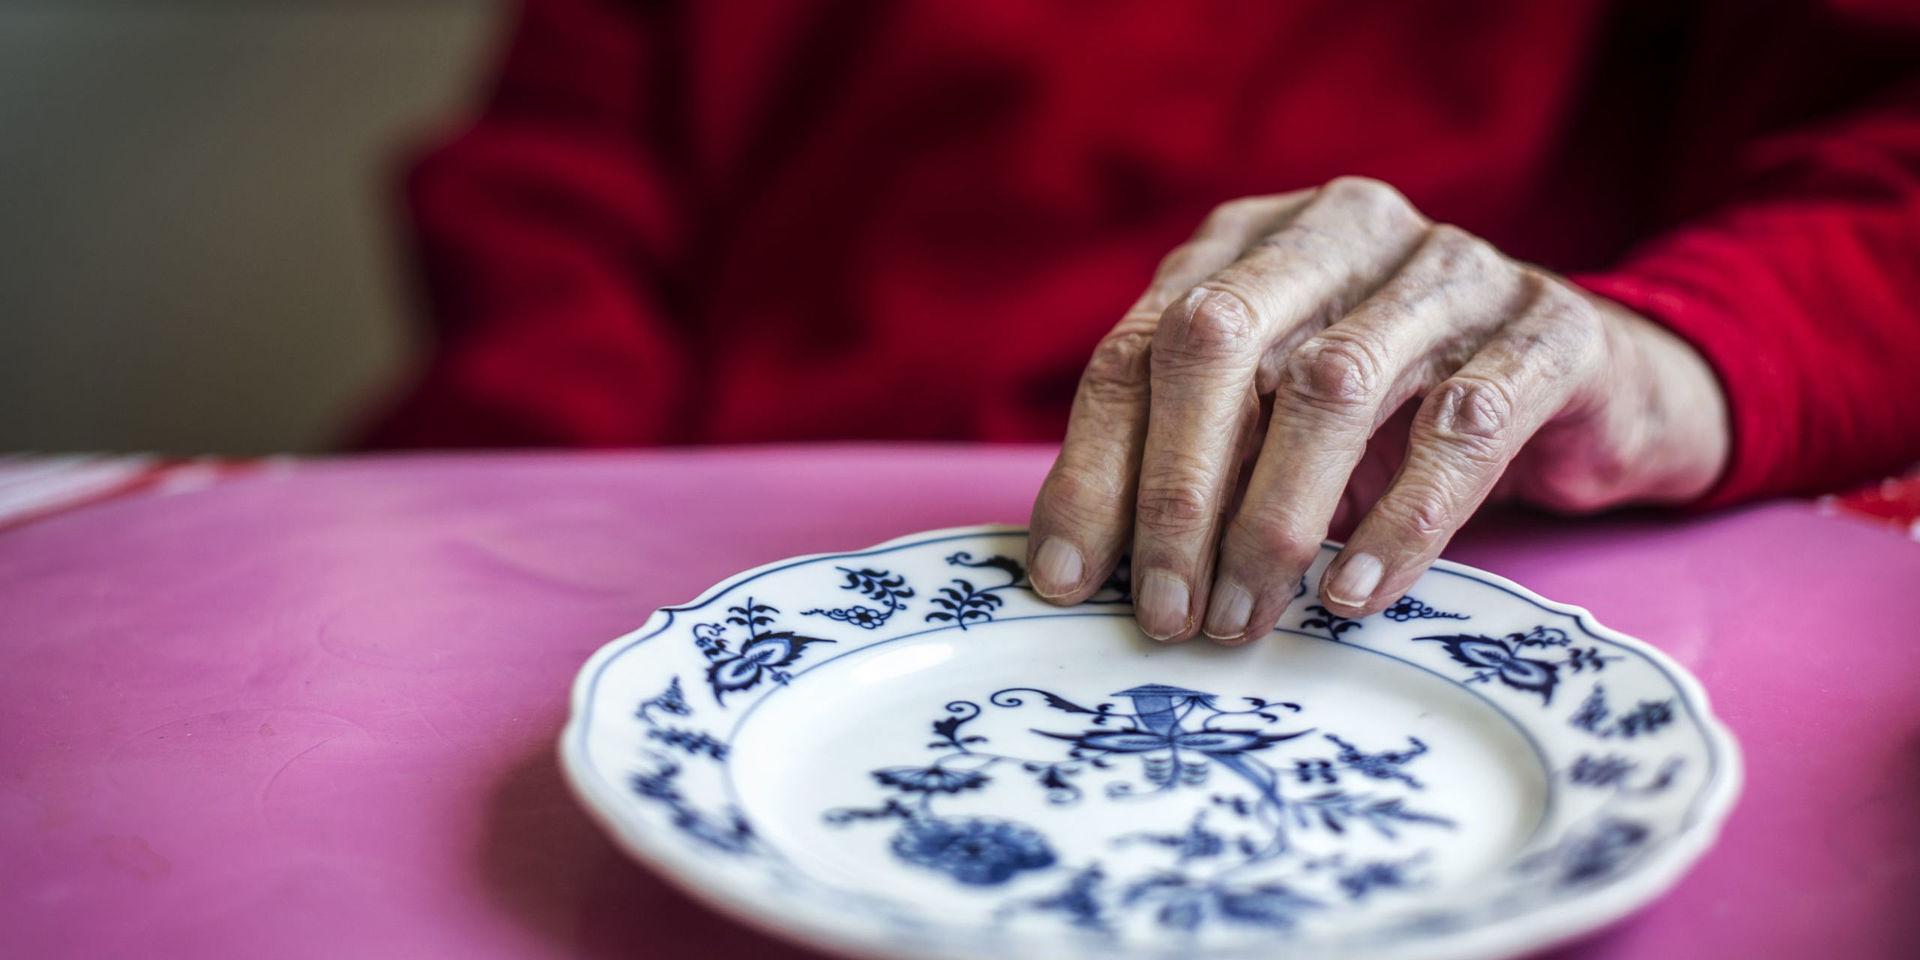 Äldre personer är särskilt känsliga för smittan och är också de som riskerar att bli mest isolerade under krisen.